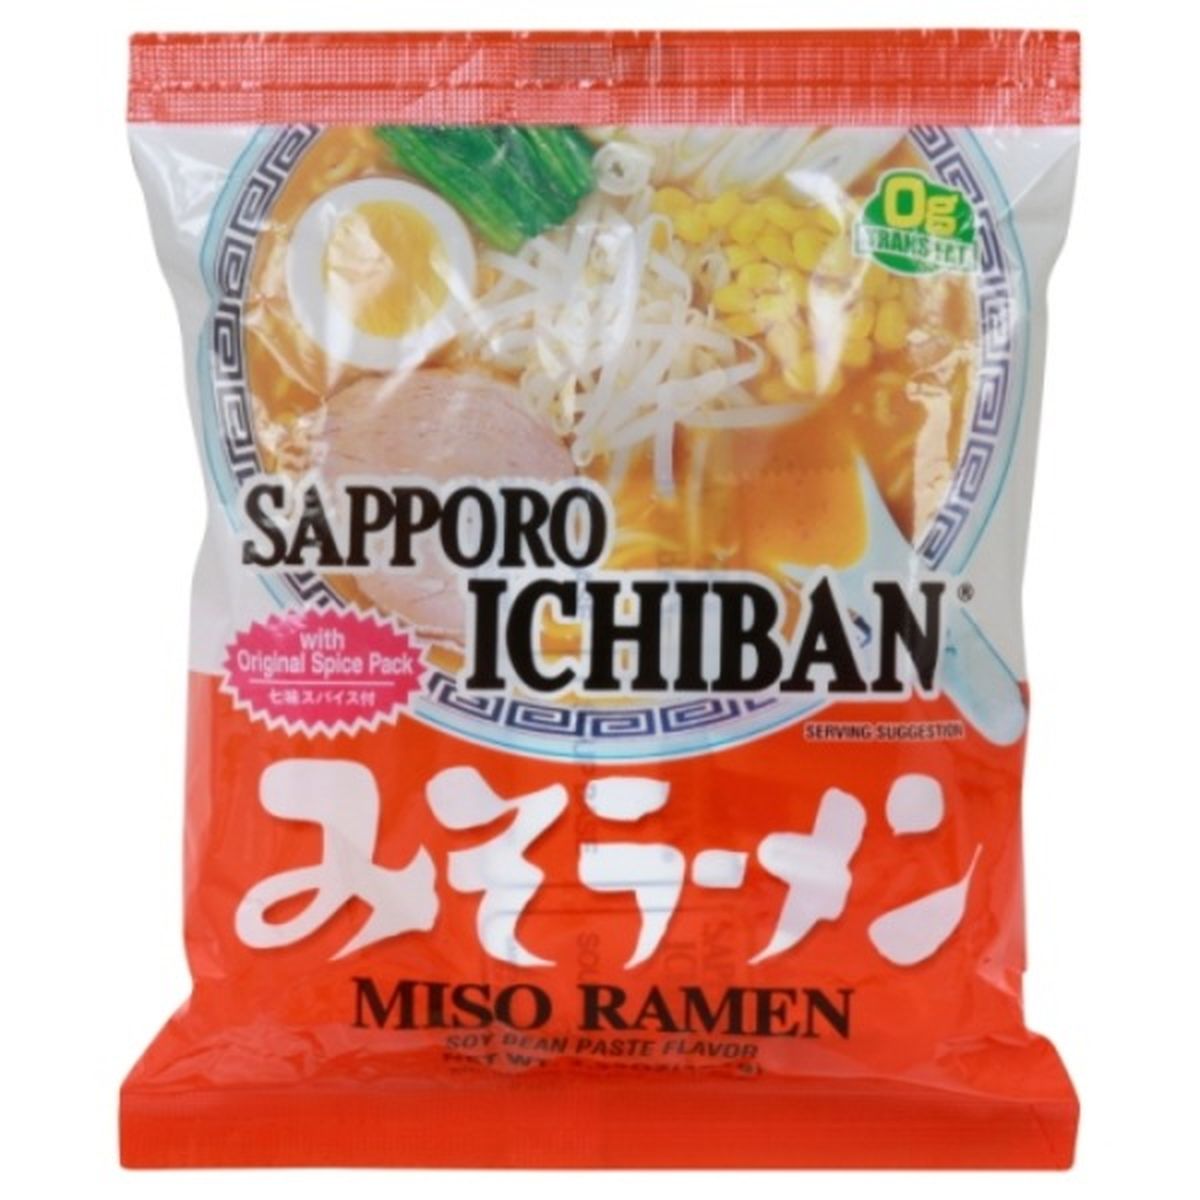 Calories in Sapporo Ichiban Miso Ramen, Soy Bean Paste Flavor